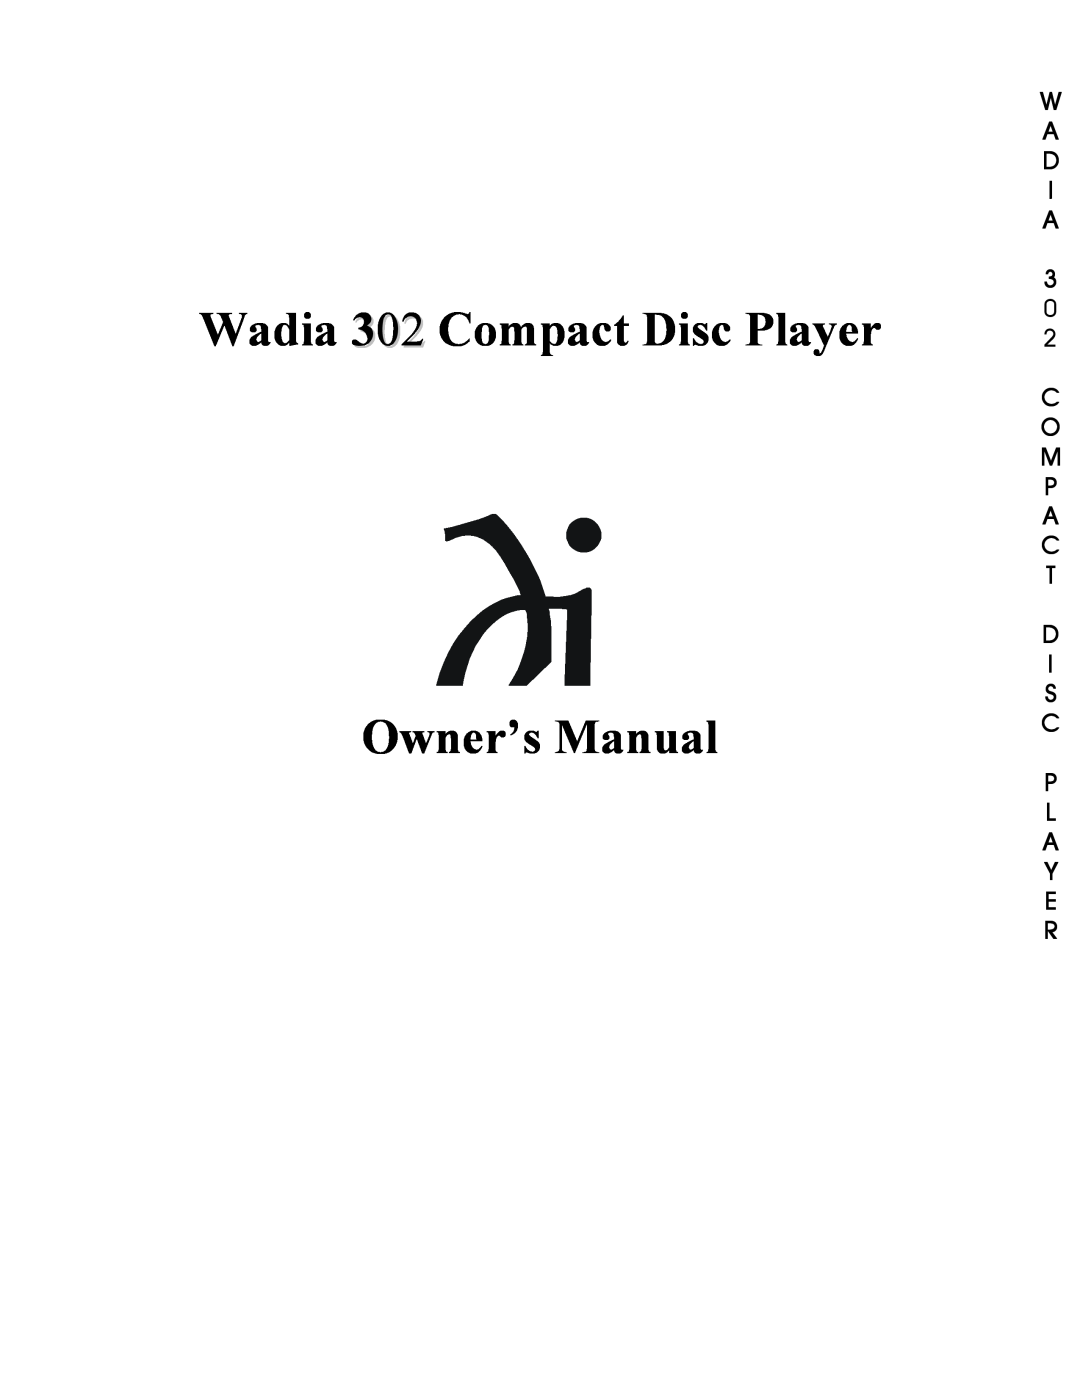 Wadia Digital 302 owner manual W A D I A, C O M P A C T D I S C P L A Y E R 